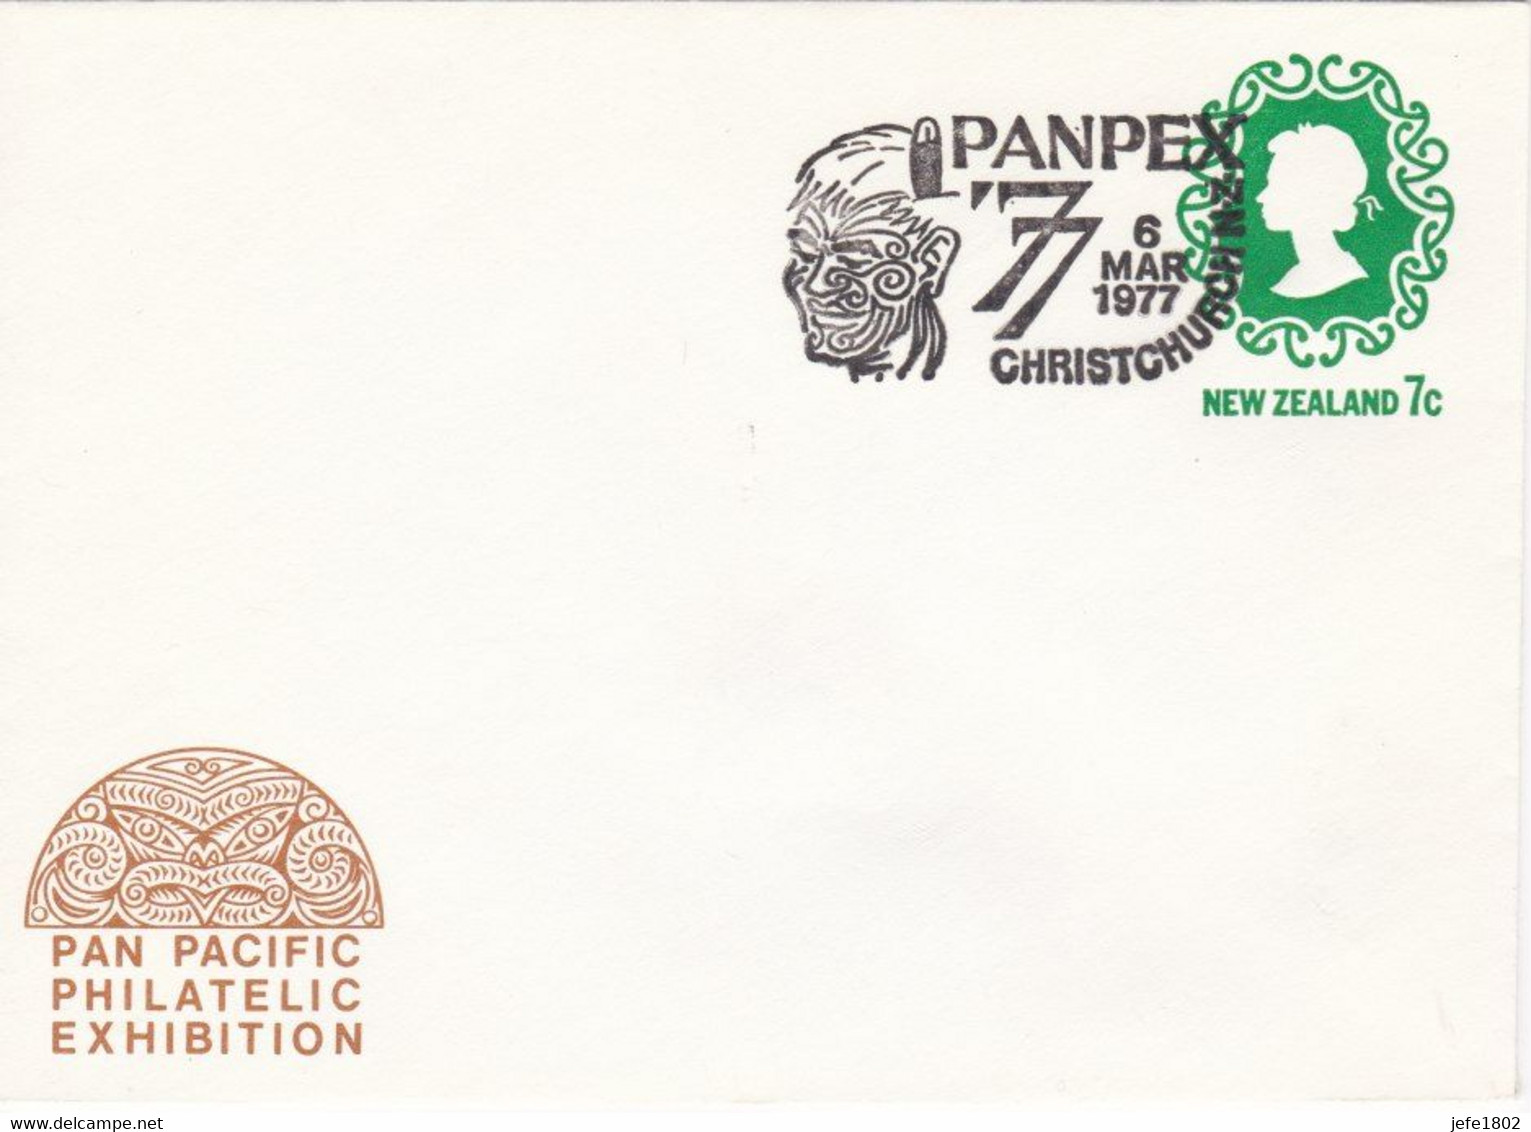 PANPEX '77 - Tattooed Maori Head - 6 Mar 1977 - Postal Stationery